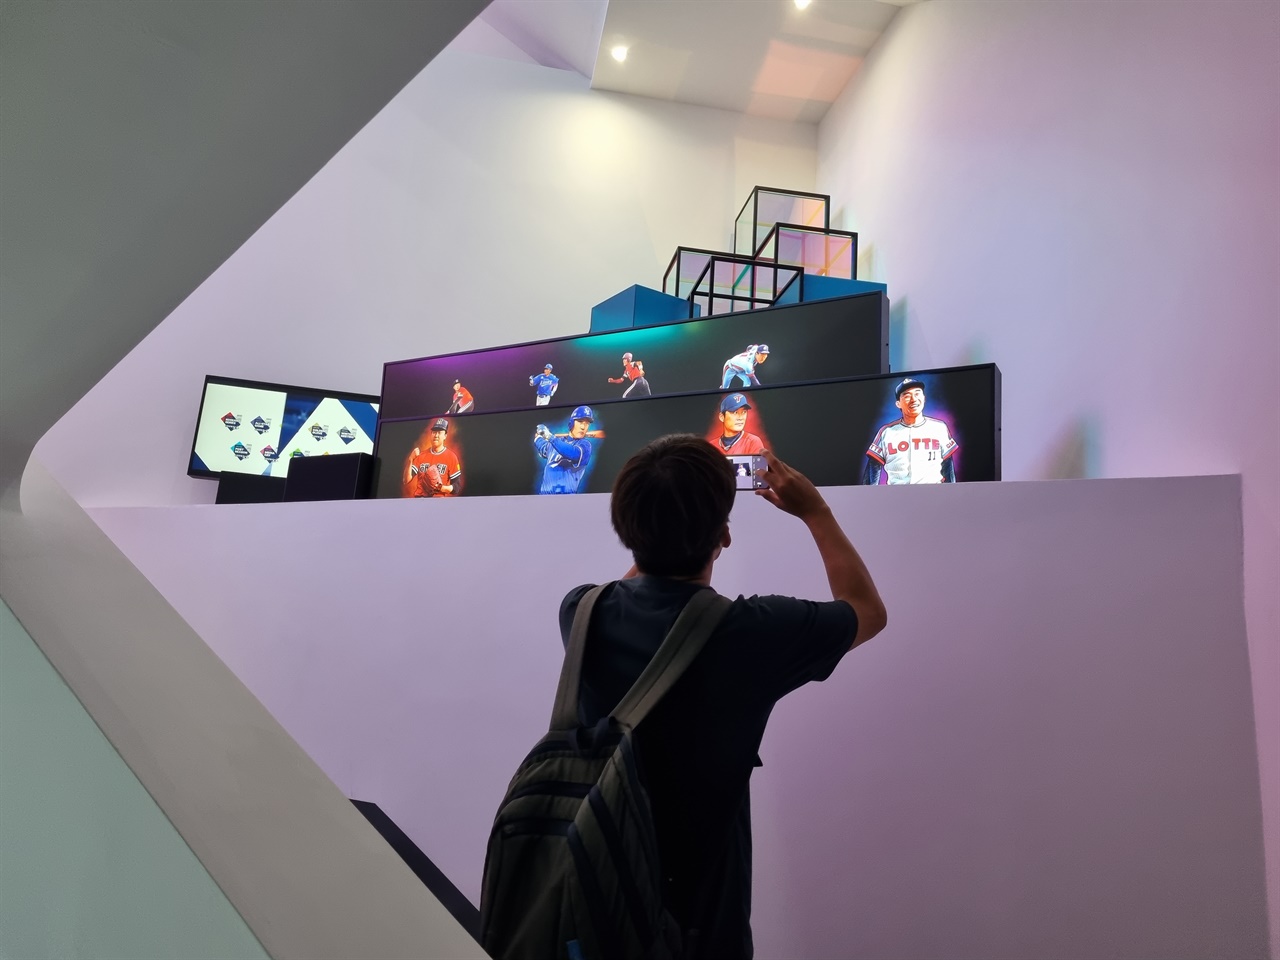  야구팬이 2층에 있는 상상갤러리에서 전시되고 있는 'KBO 레전드 40'의 모습을 촬영하고 있다.